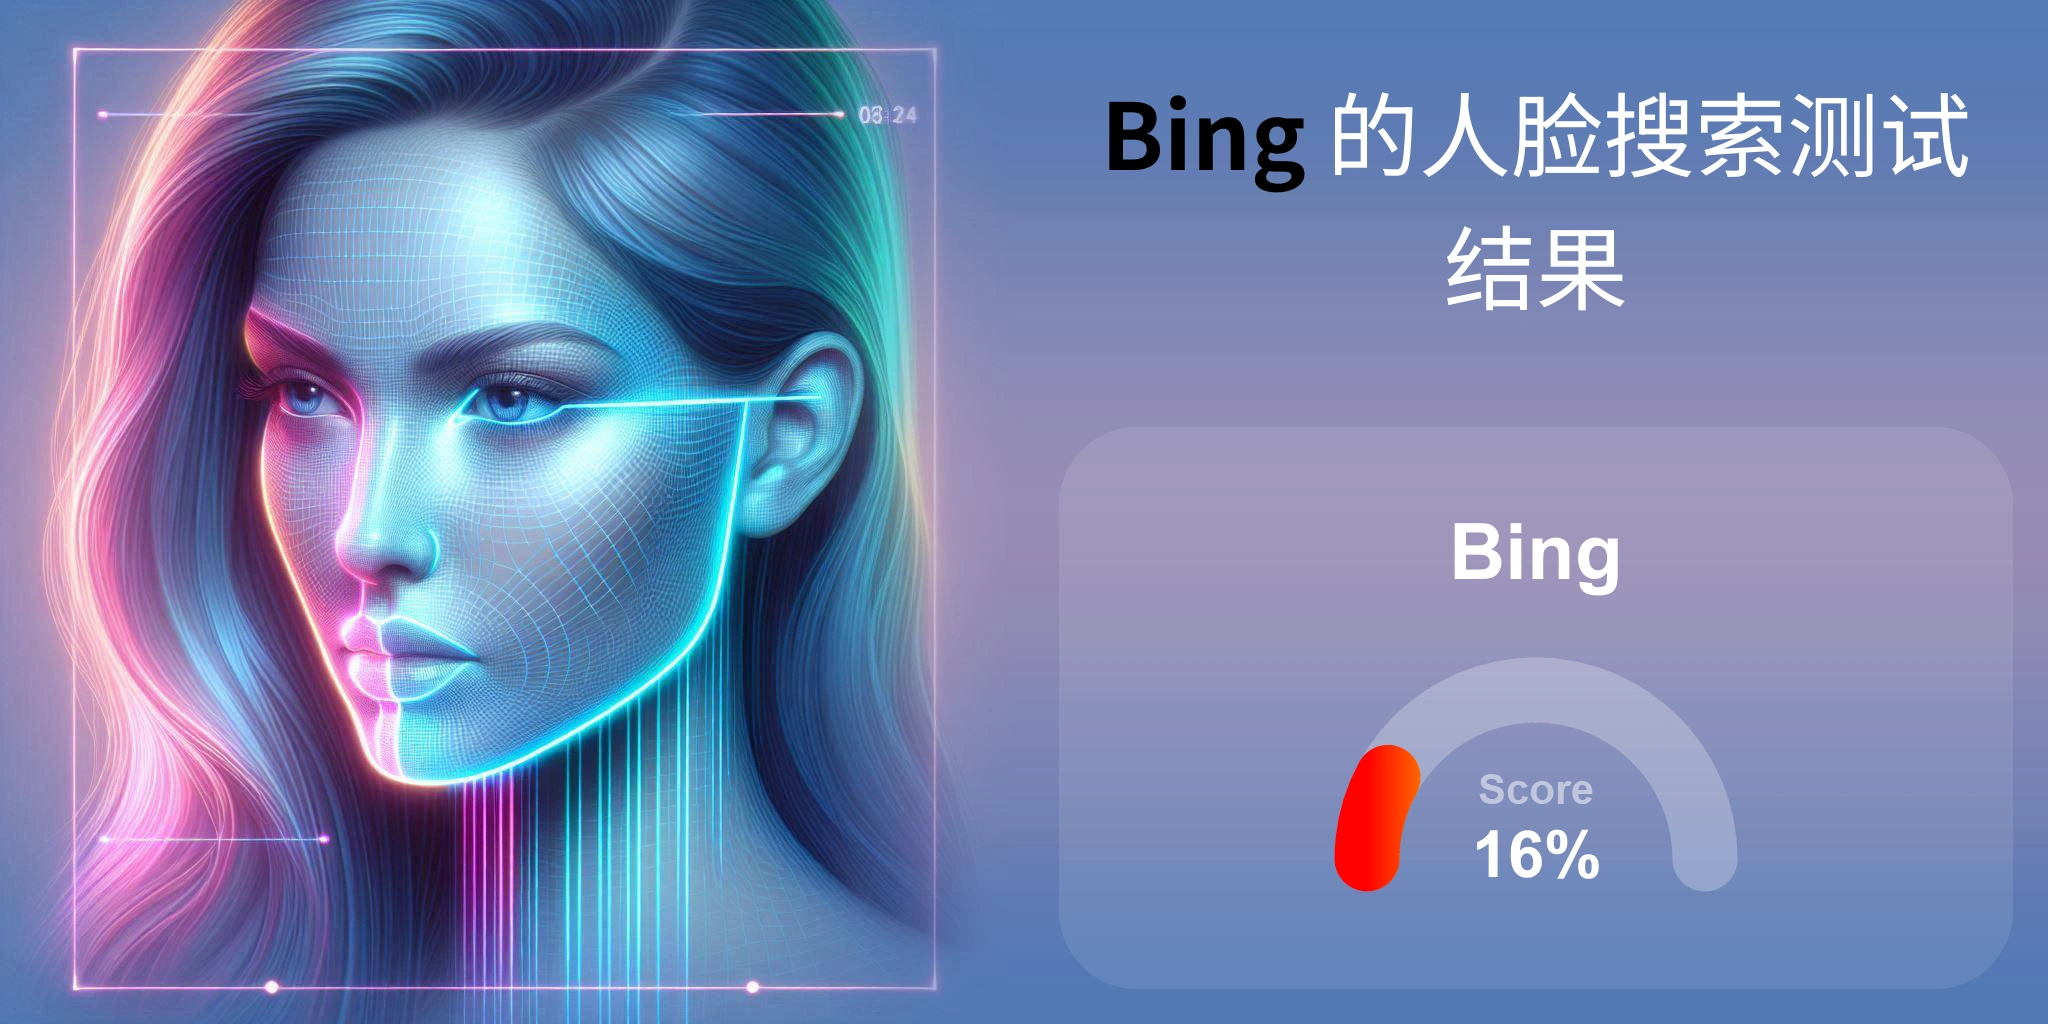 Bing 是人脸搜索的最佳选择吗？